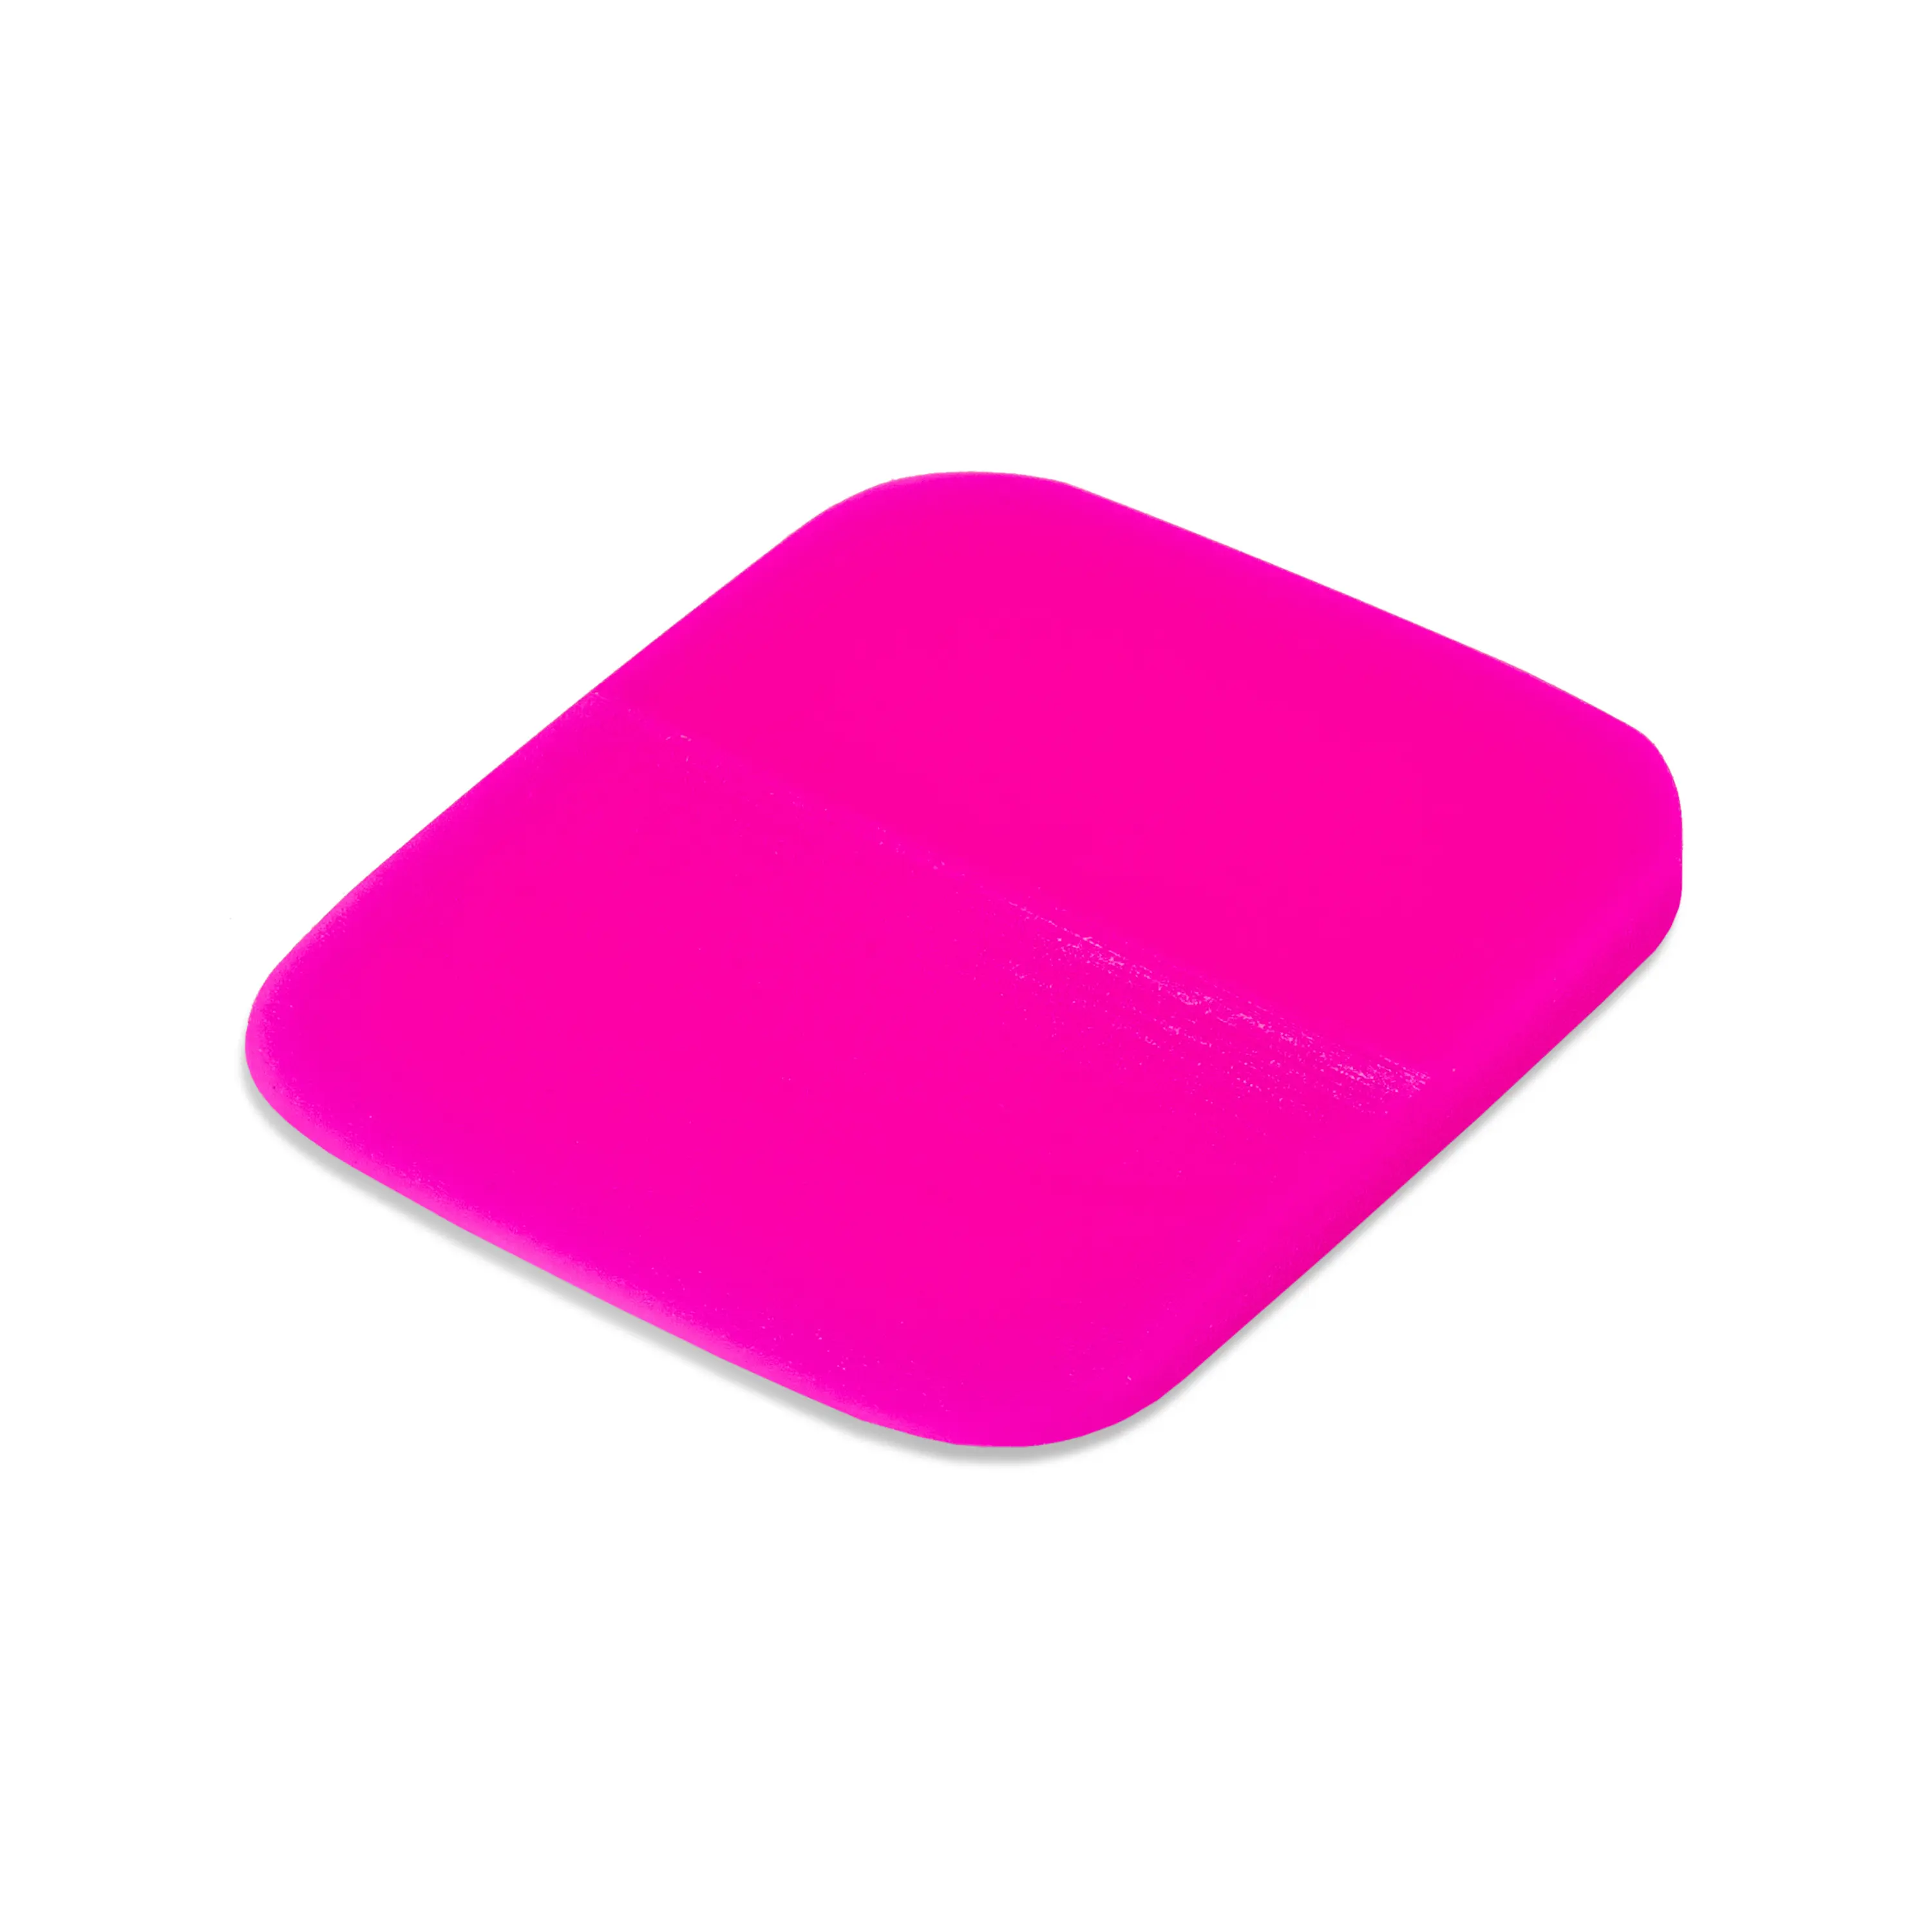 Выгонка полиуретановая розовая скругленная Pinky Slider, 0,6х6,5х7,5